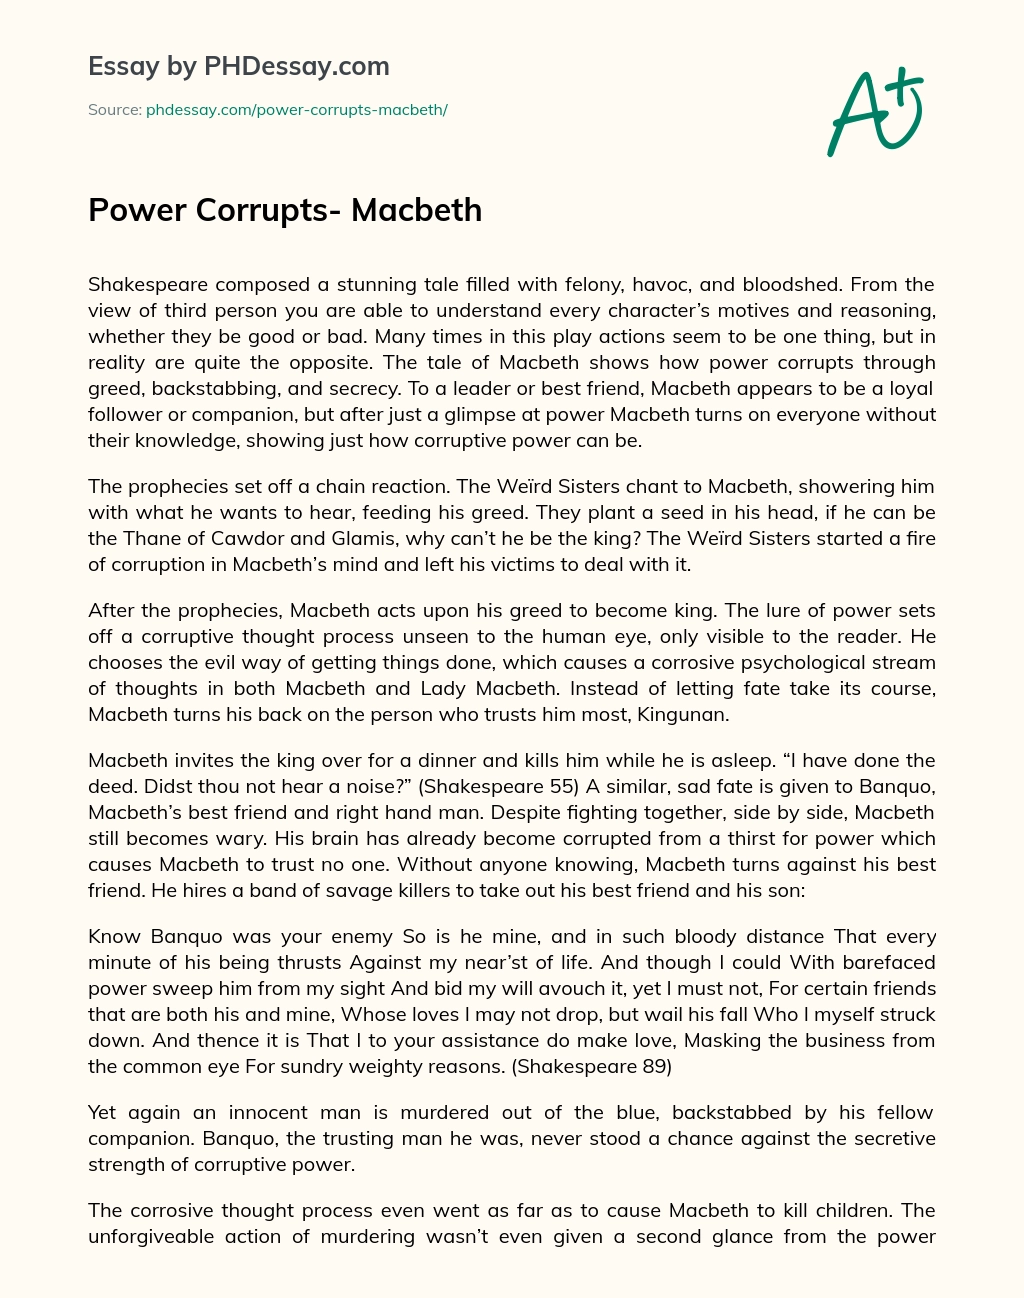 Power Corrupts- Macbeth essay